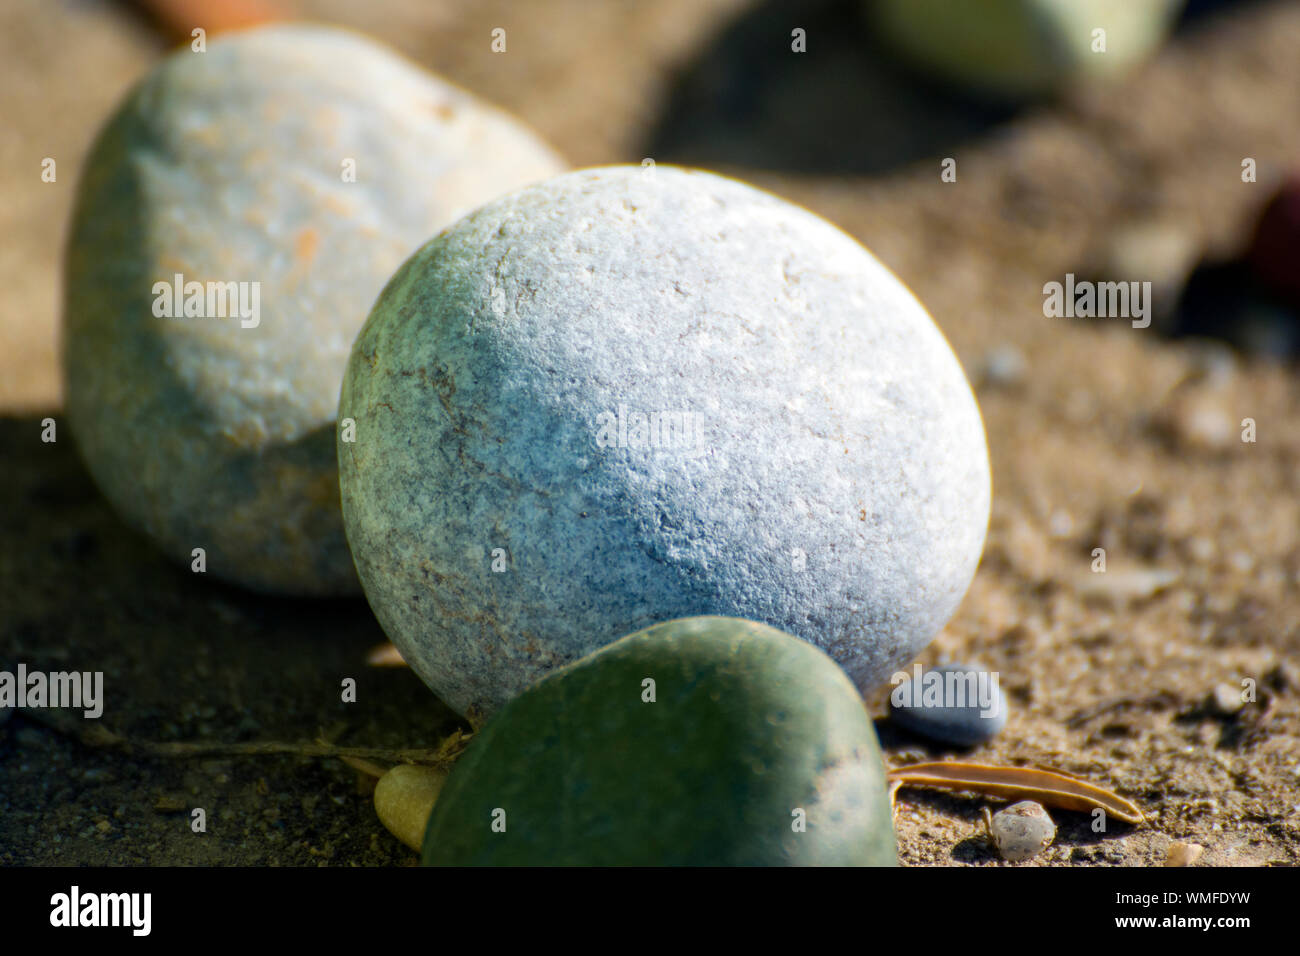 Schöne, weiche, Steine fotografiert an einem Kieselstrand in Griechenland. Eine kleine Olive Branch können zwischen der kleinen Steine gesehen werden. Stockfoto